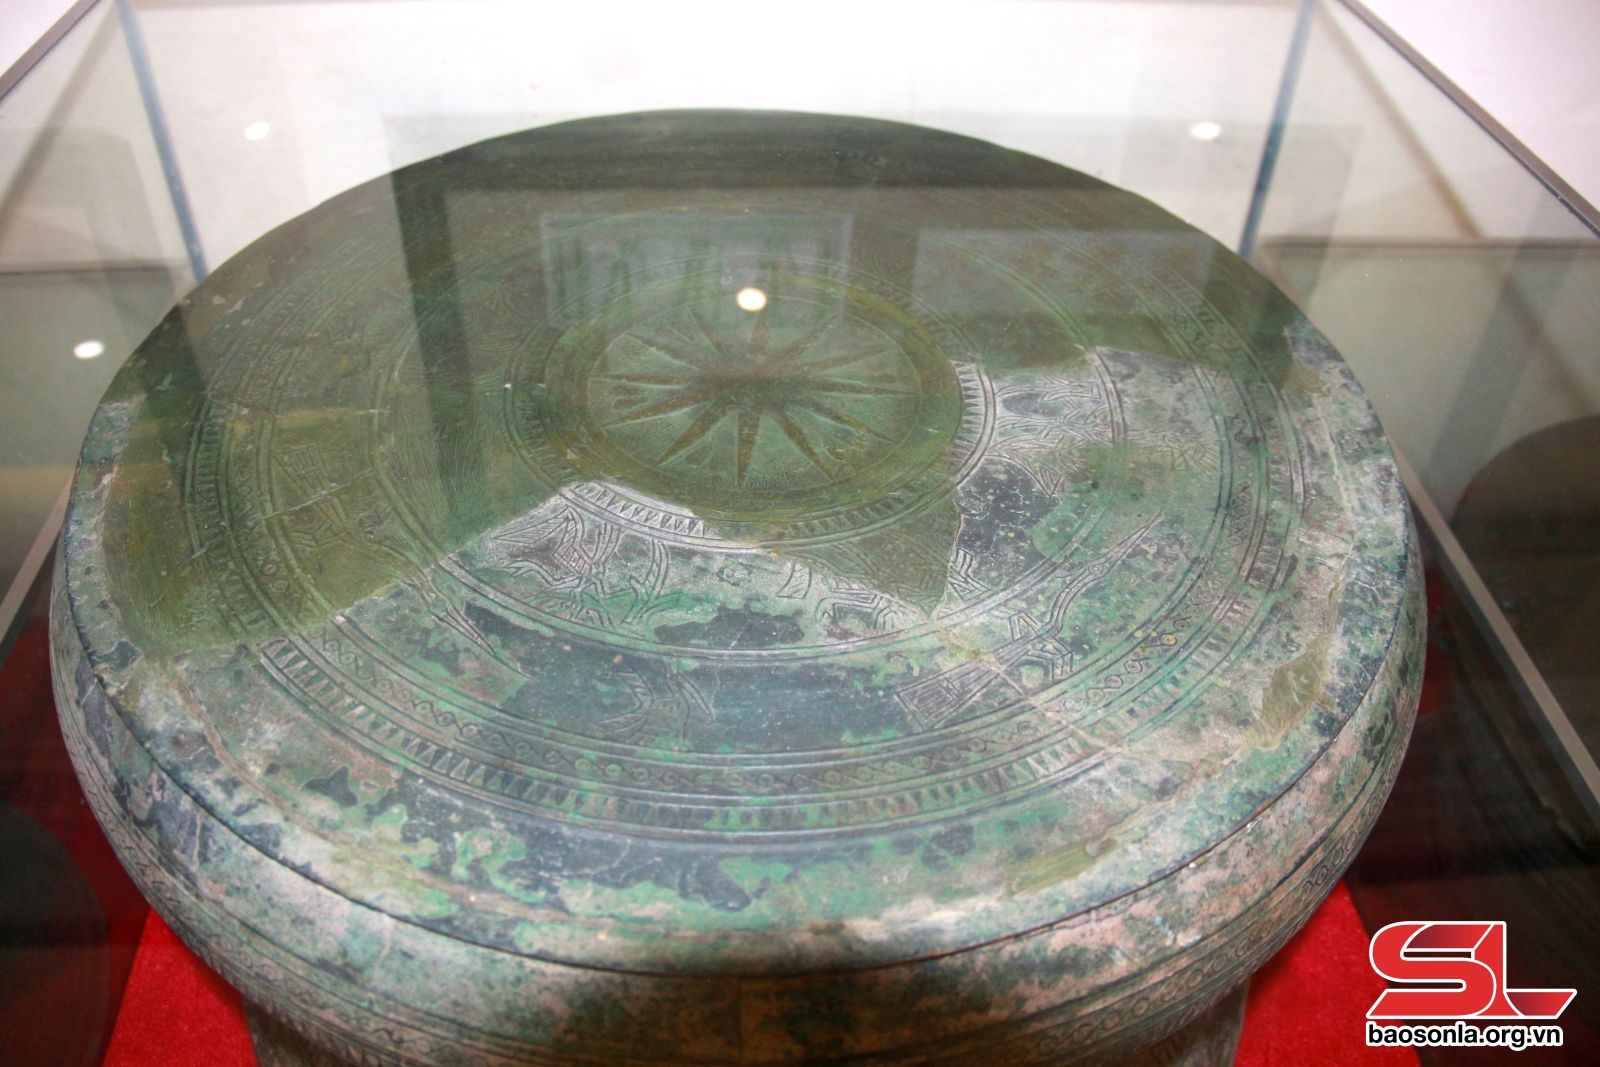 Bảo vệ và phát huy giá trị bộ sưu tập cổ vật trống đồng tỉnh Sơn La - Ảnh 2.